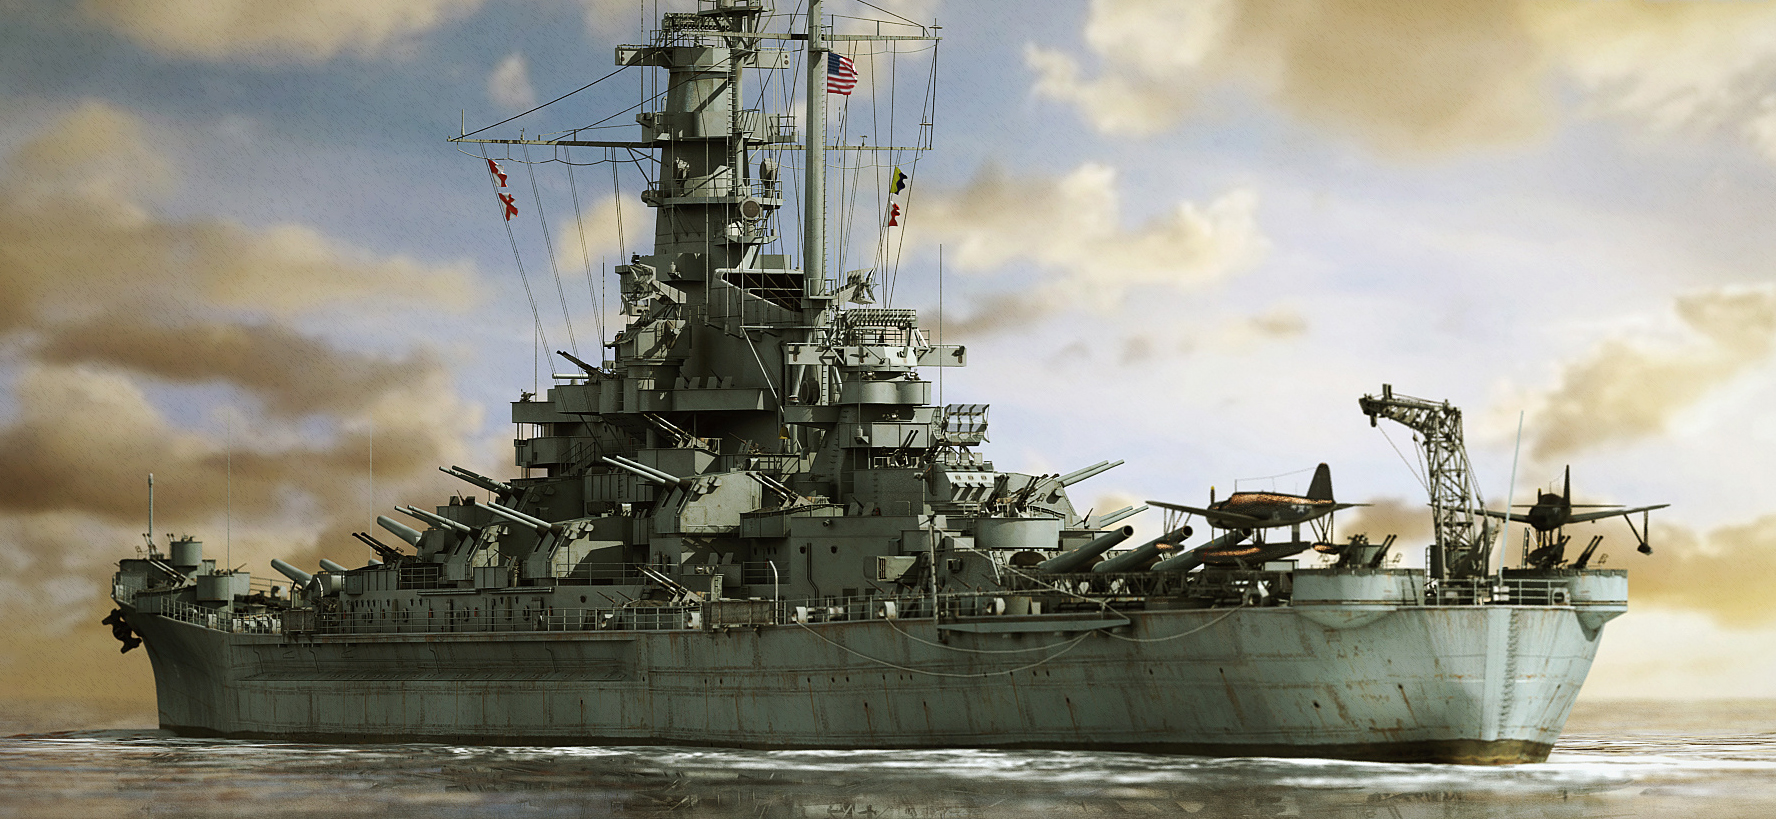 原创美军重型16英寸巨炮战舰多次掩护友军航母挫败日军疯狂反扑